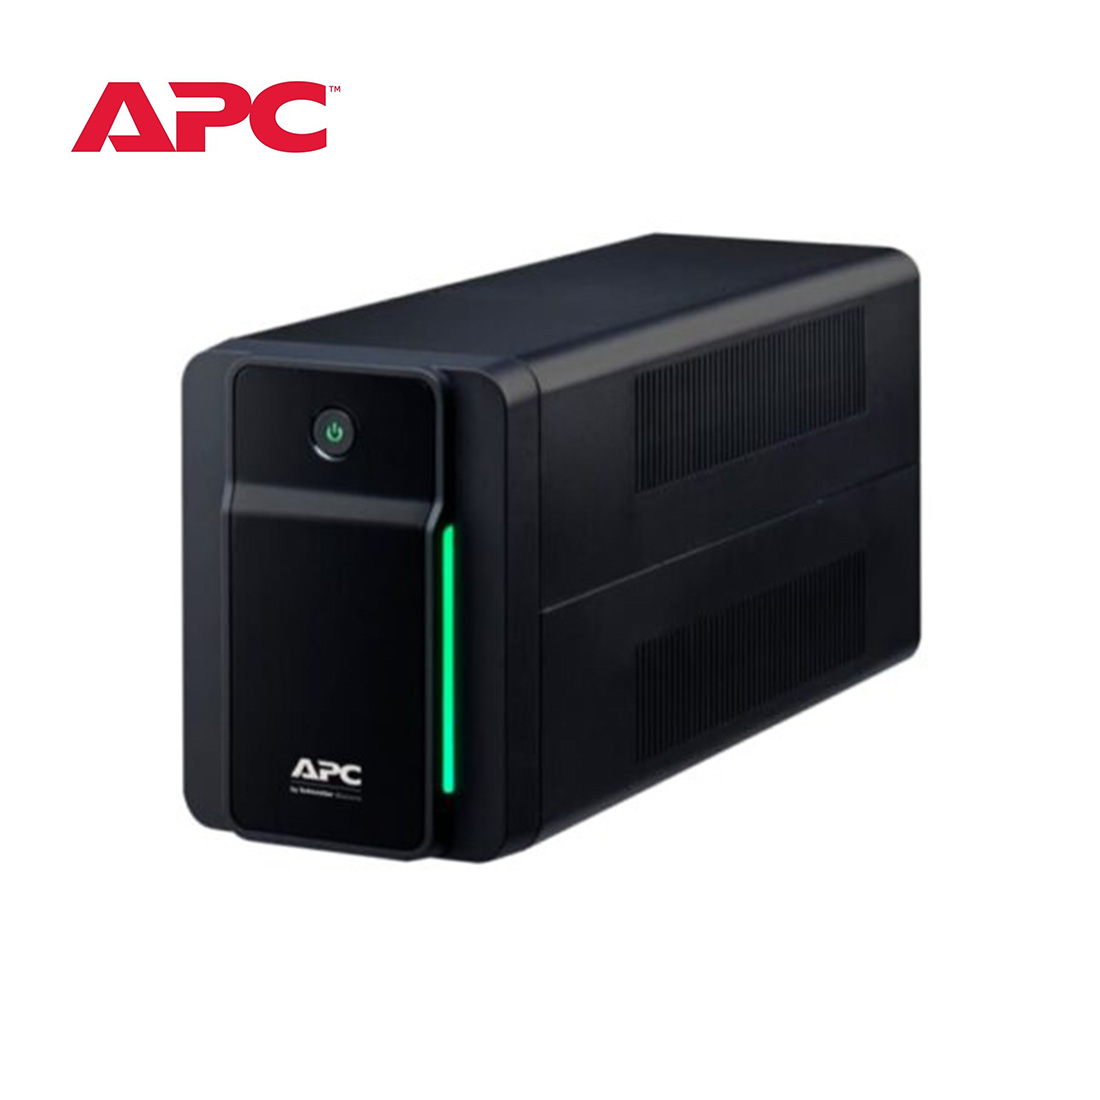 APC-Back-UPS-950VA-230V-AVR-Universal-Sockets